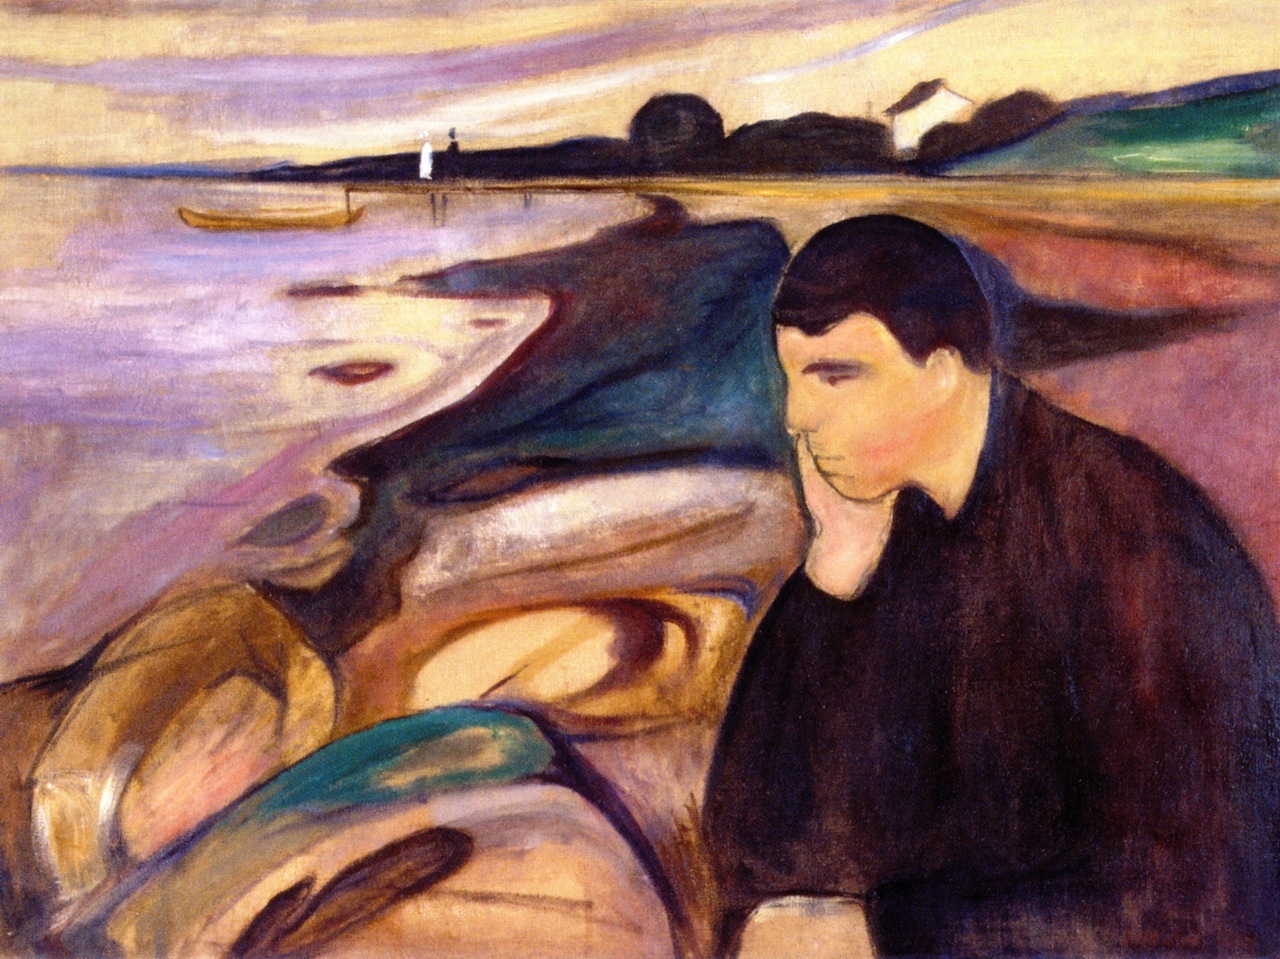 Melancholy, Edvard Munch, 1894